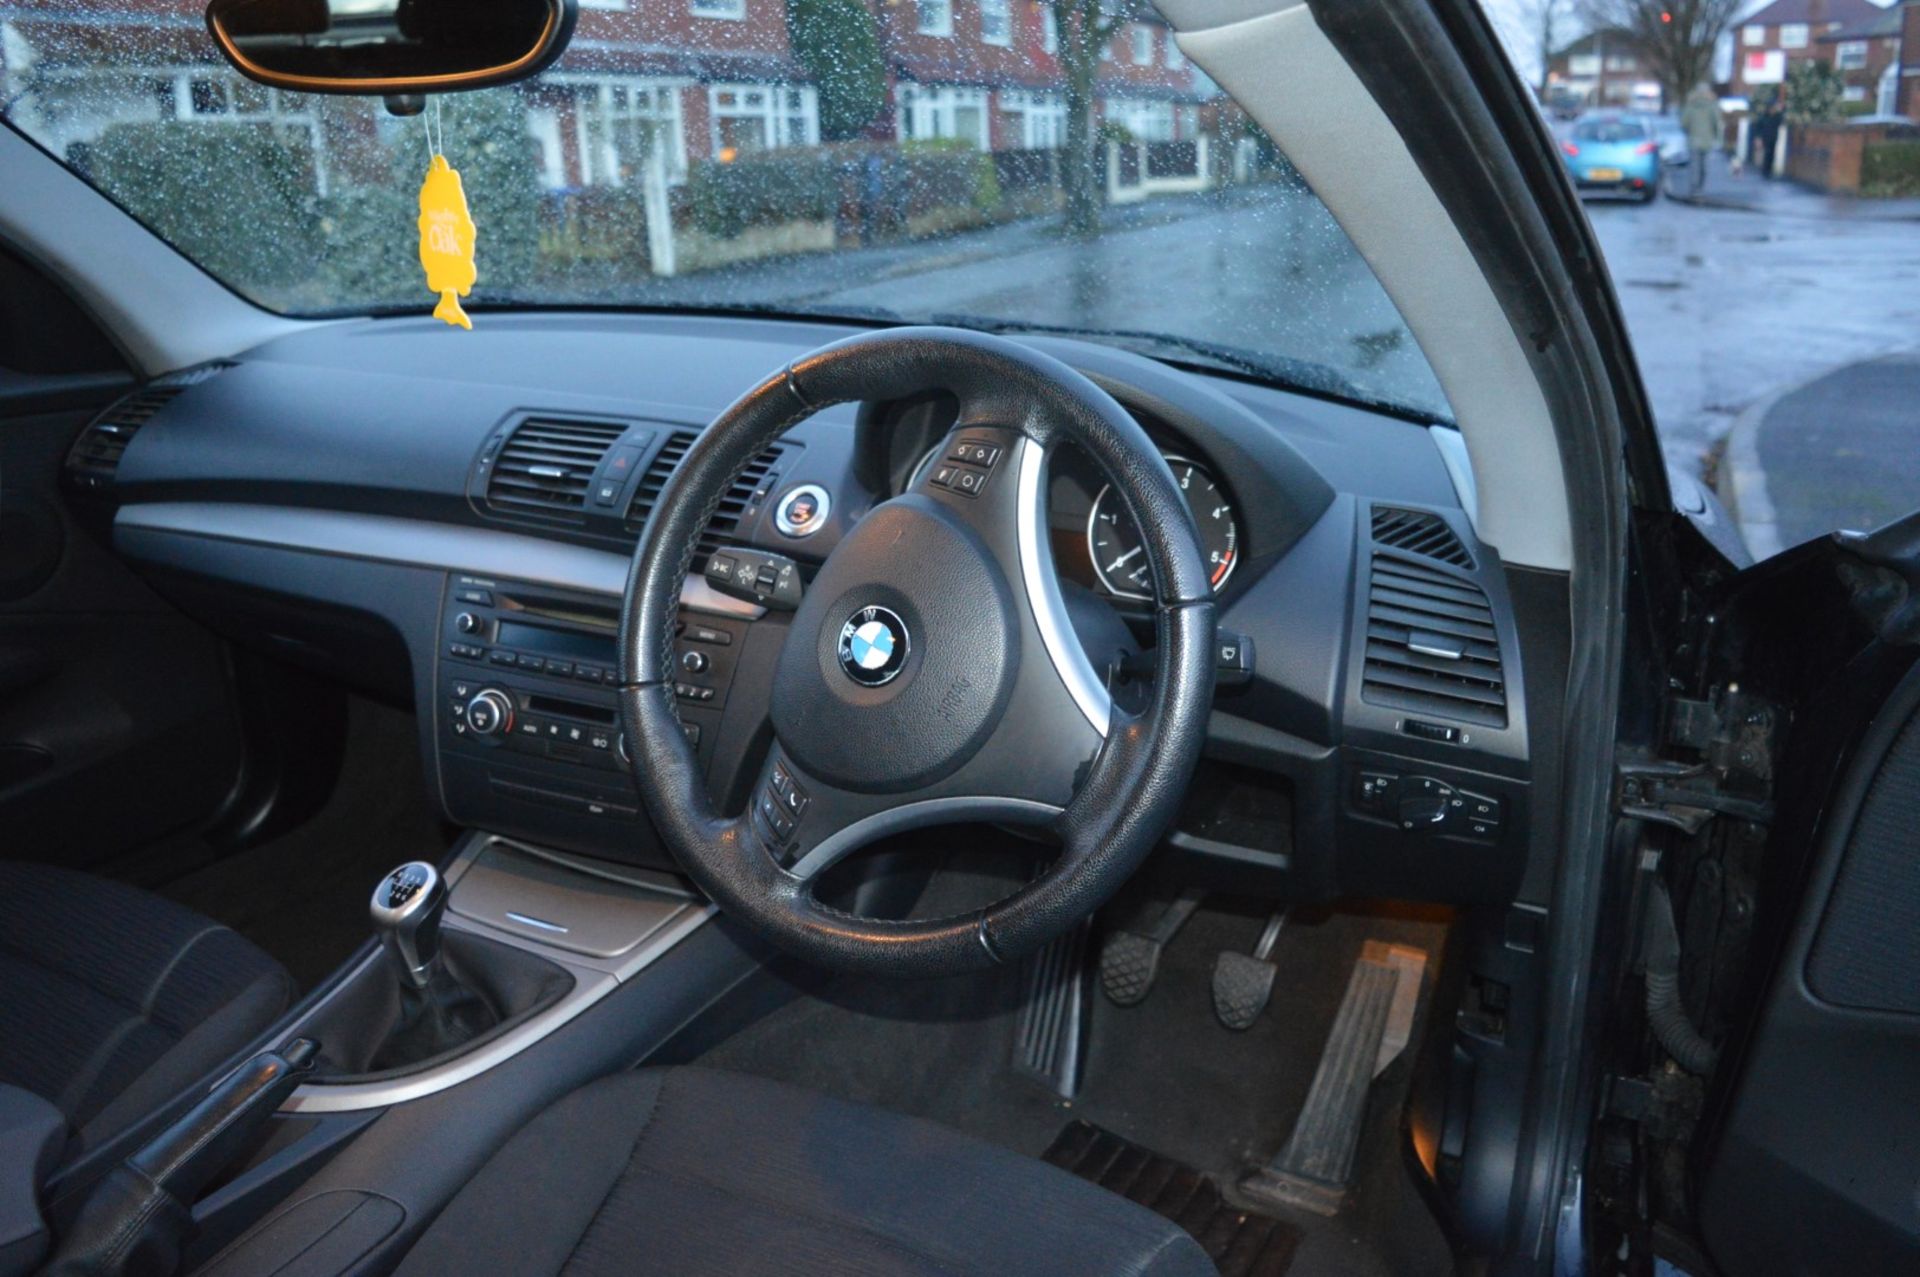 1 x 2008 BMW 1 Series 118d 3 Door Black 2l - £30 Per Year Road Tax - MOT Until January 2020 - - Image 27 of 31